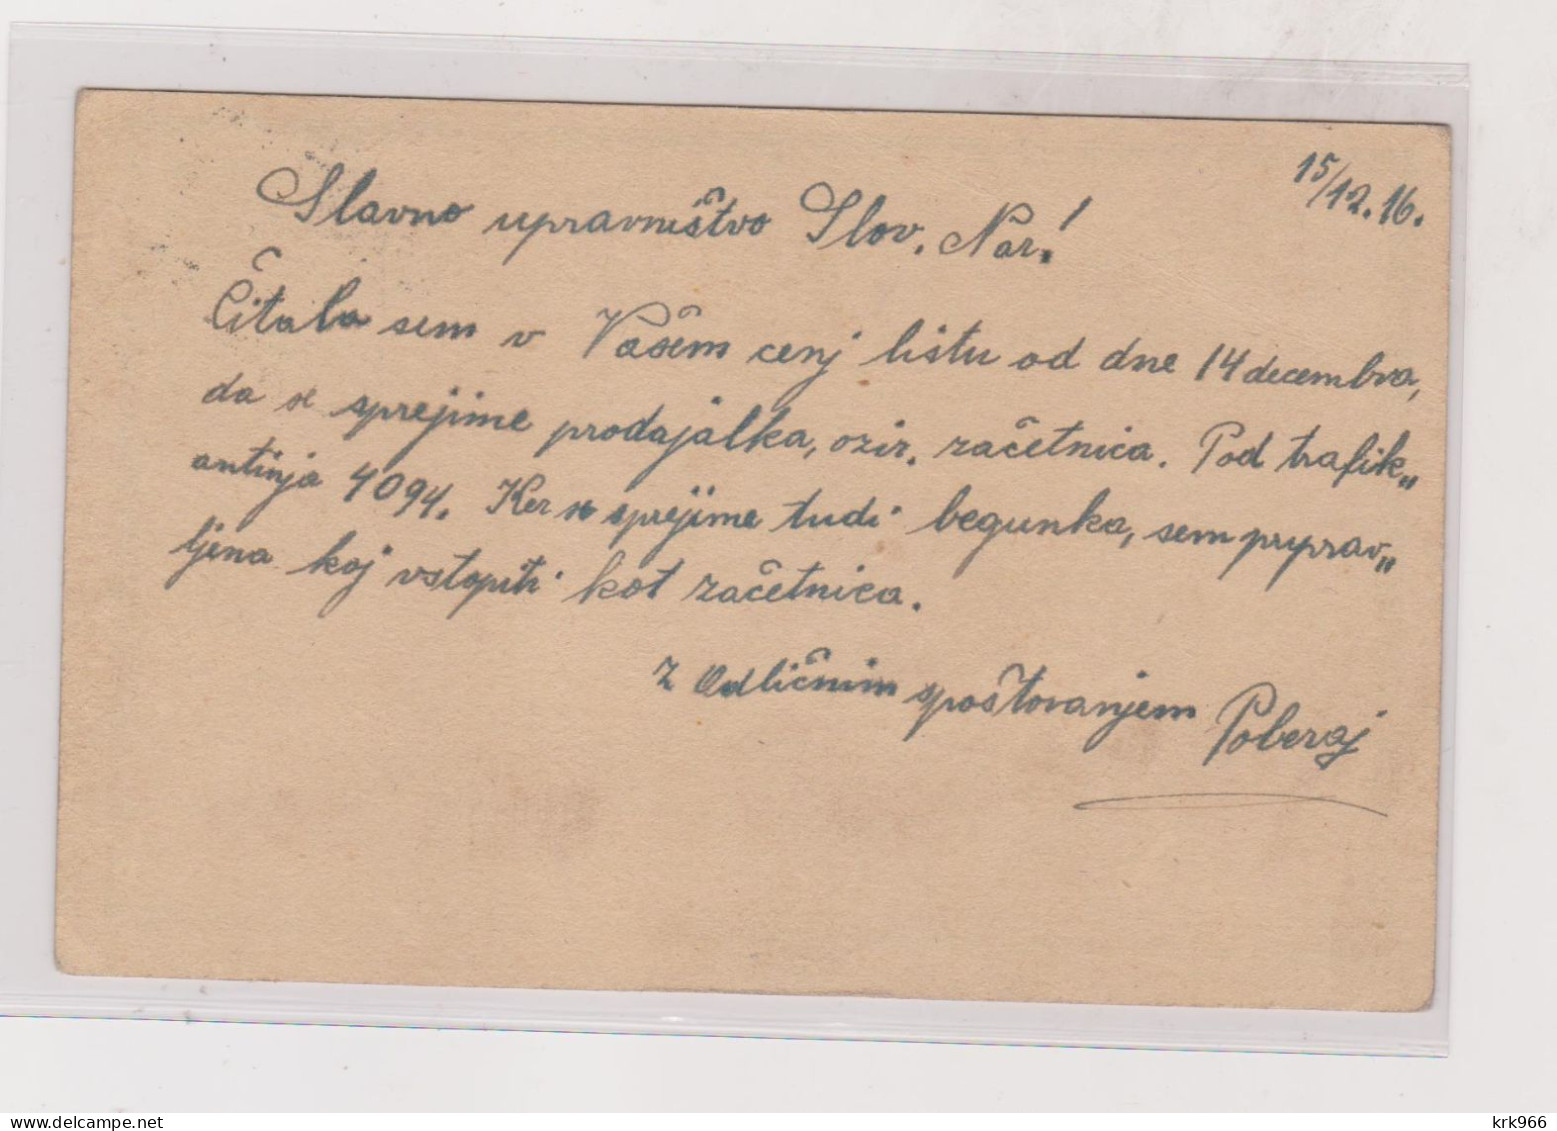 SLOVENIA,Austria 1916 LJUBLJANA LAIBACH Nice Postal Stationery - Slovénie